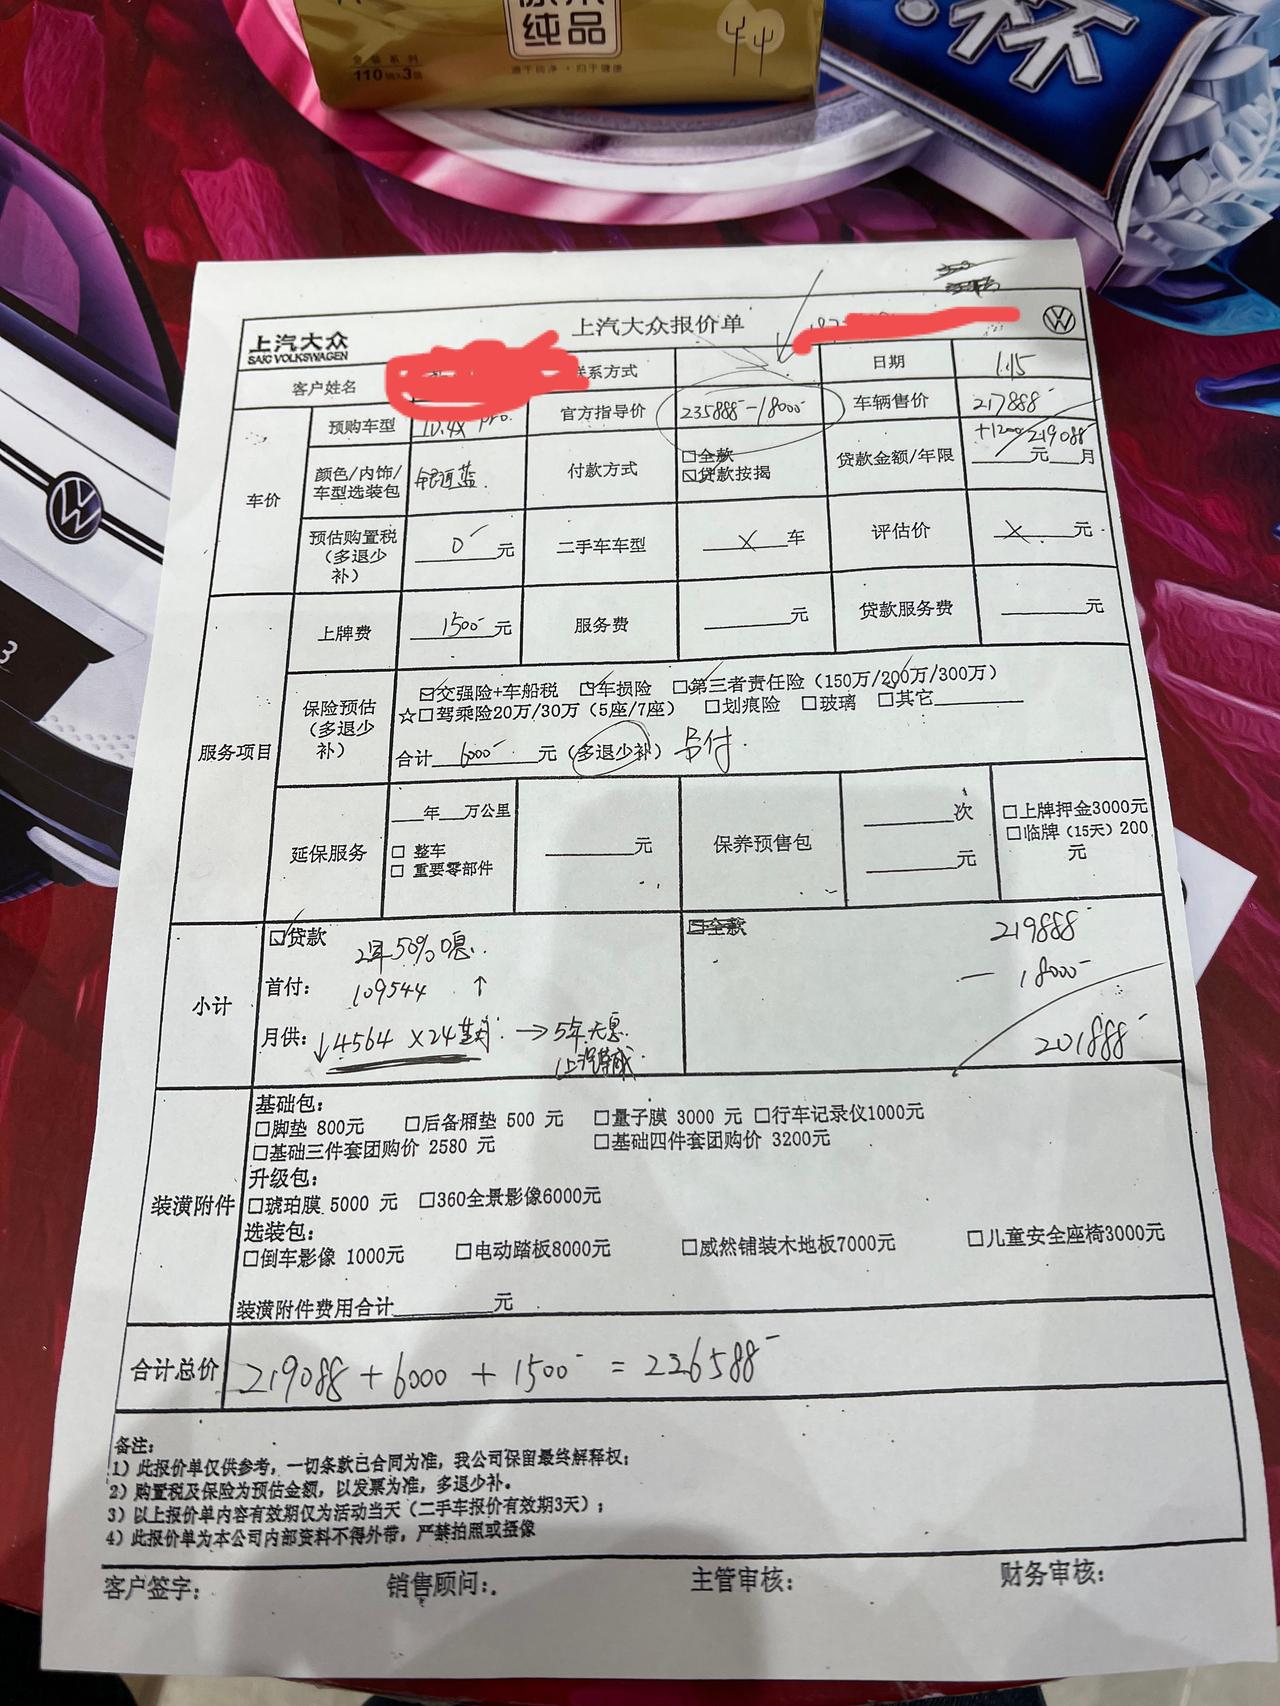 大众ID.4 X 有没有近期在上海购买ID4的车友分享一下车价，我昨天去问了一下只有1.8w补贴和1000元保险补贴和2